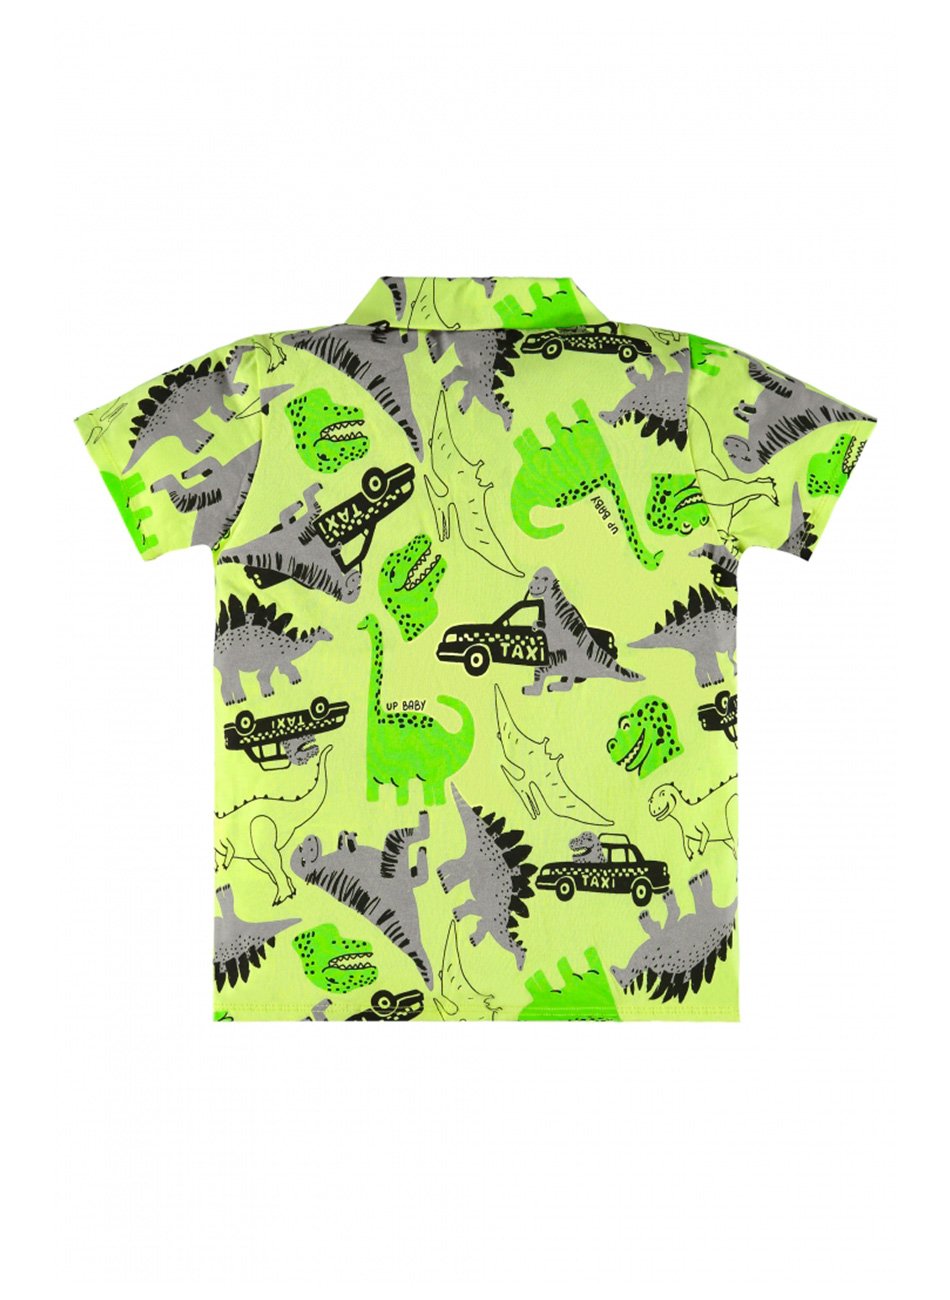 Camisetas Elite Verde Limão - Compre Já